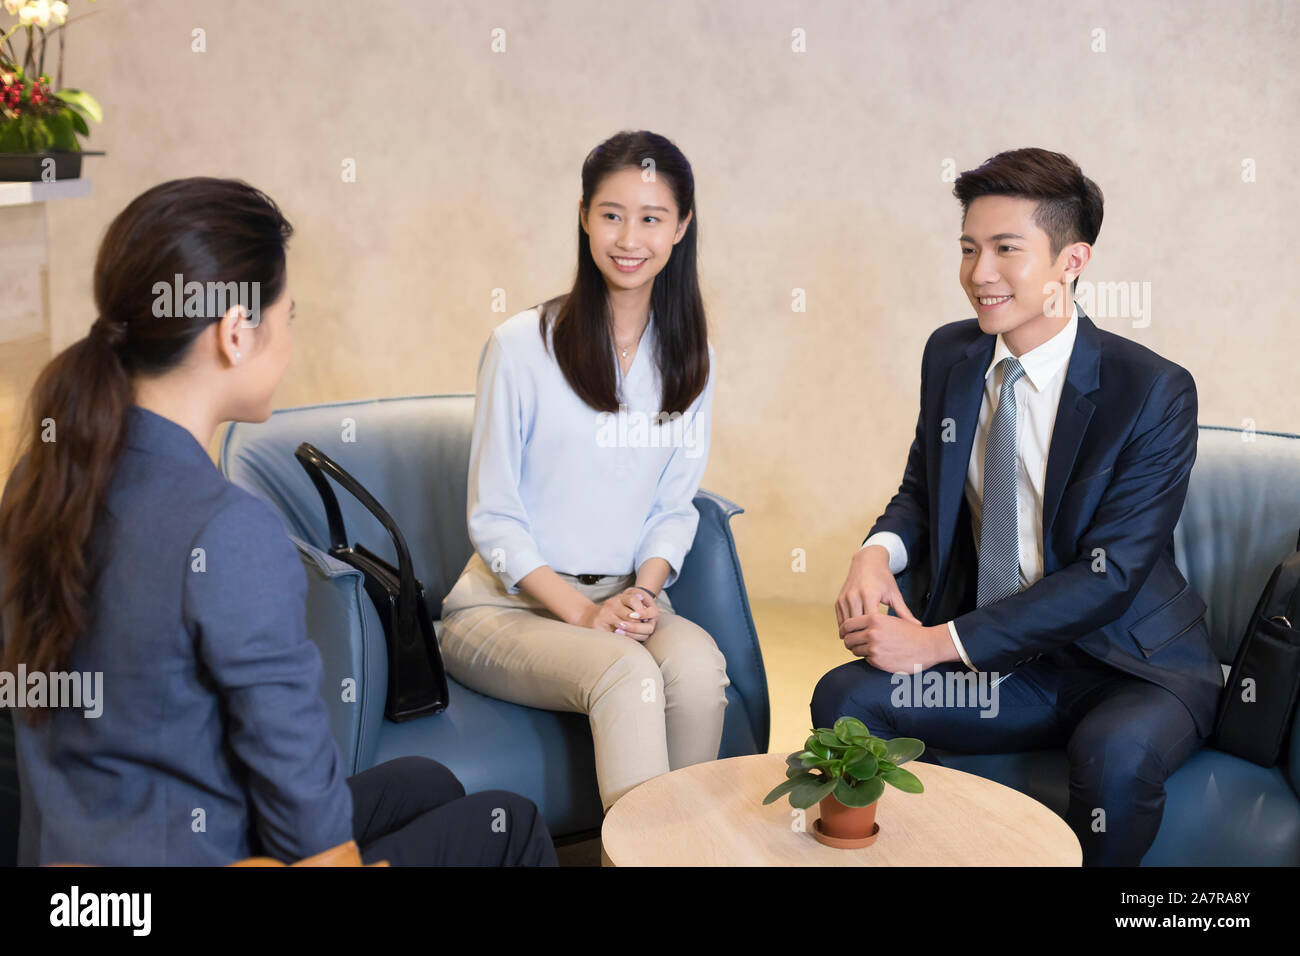 Foto von einer Gruppe von drei lächelnden jungen männlichen und weiblichen Geschäftsleuten zusammen reden während einer Konferenz Stockfoto